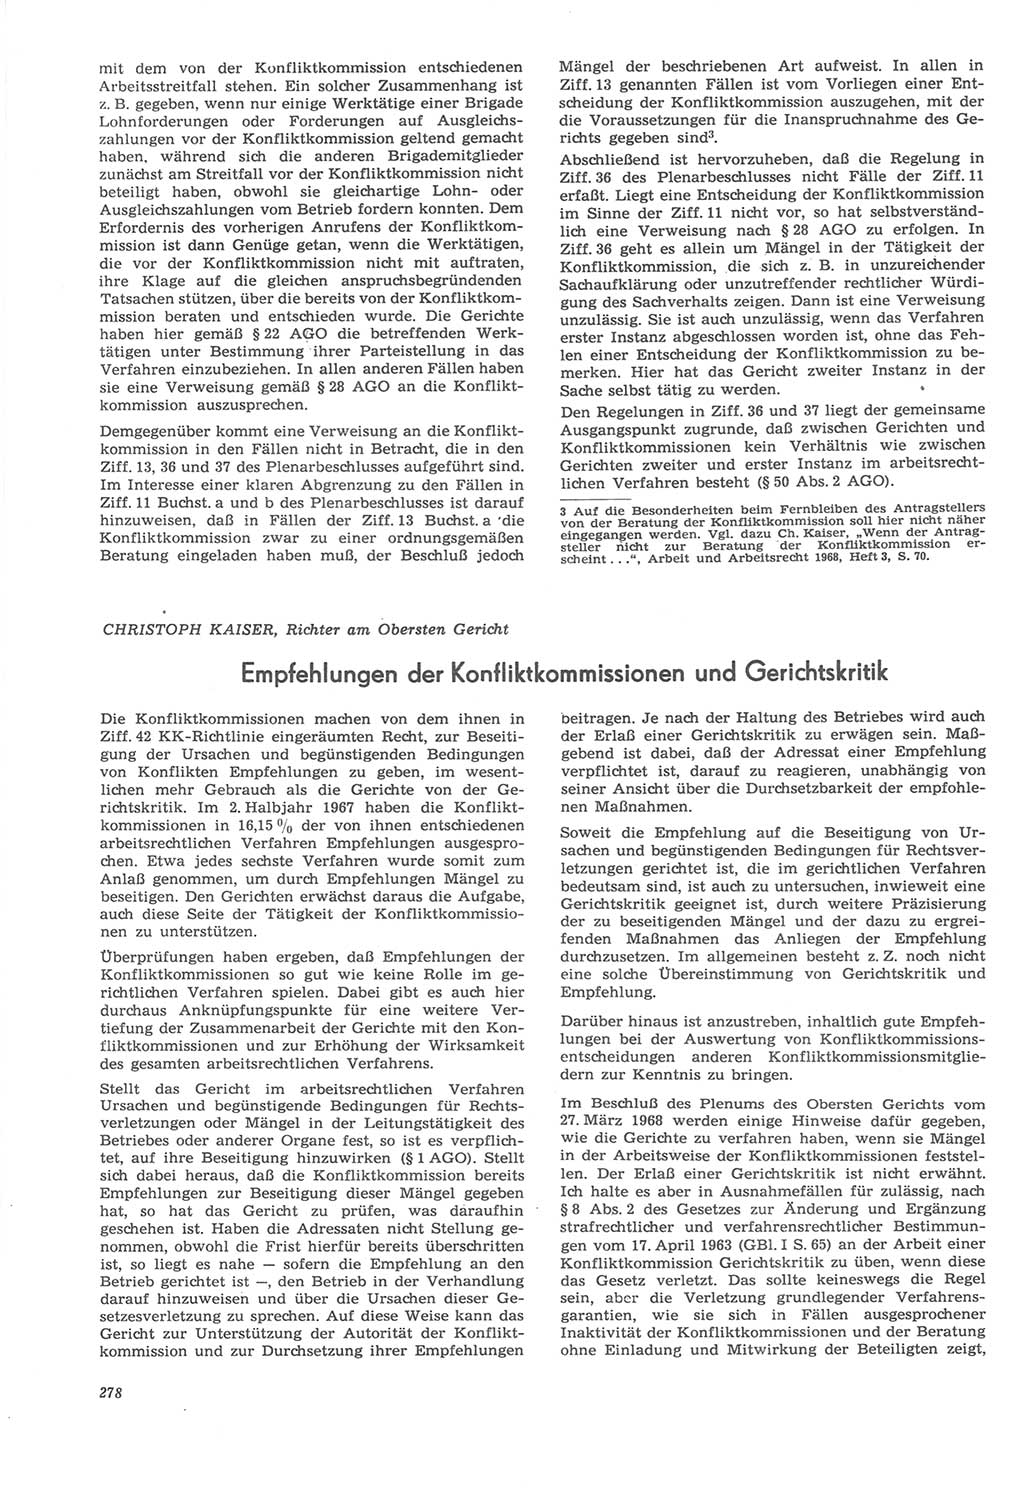 Neue Justiz (NJ), Zeitschrift für Recht und Rechtswissenschaft [Deutsche Demokratische Republik (DDR)], 22. Jahrgang 1968, Seite 278 (NJ DDR 1968, S. 278)